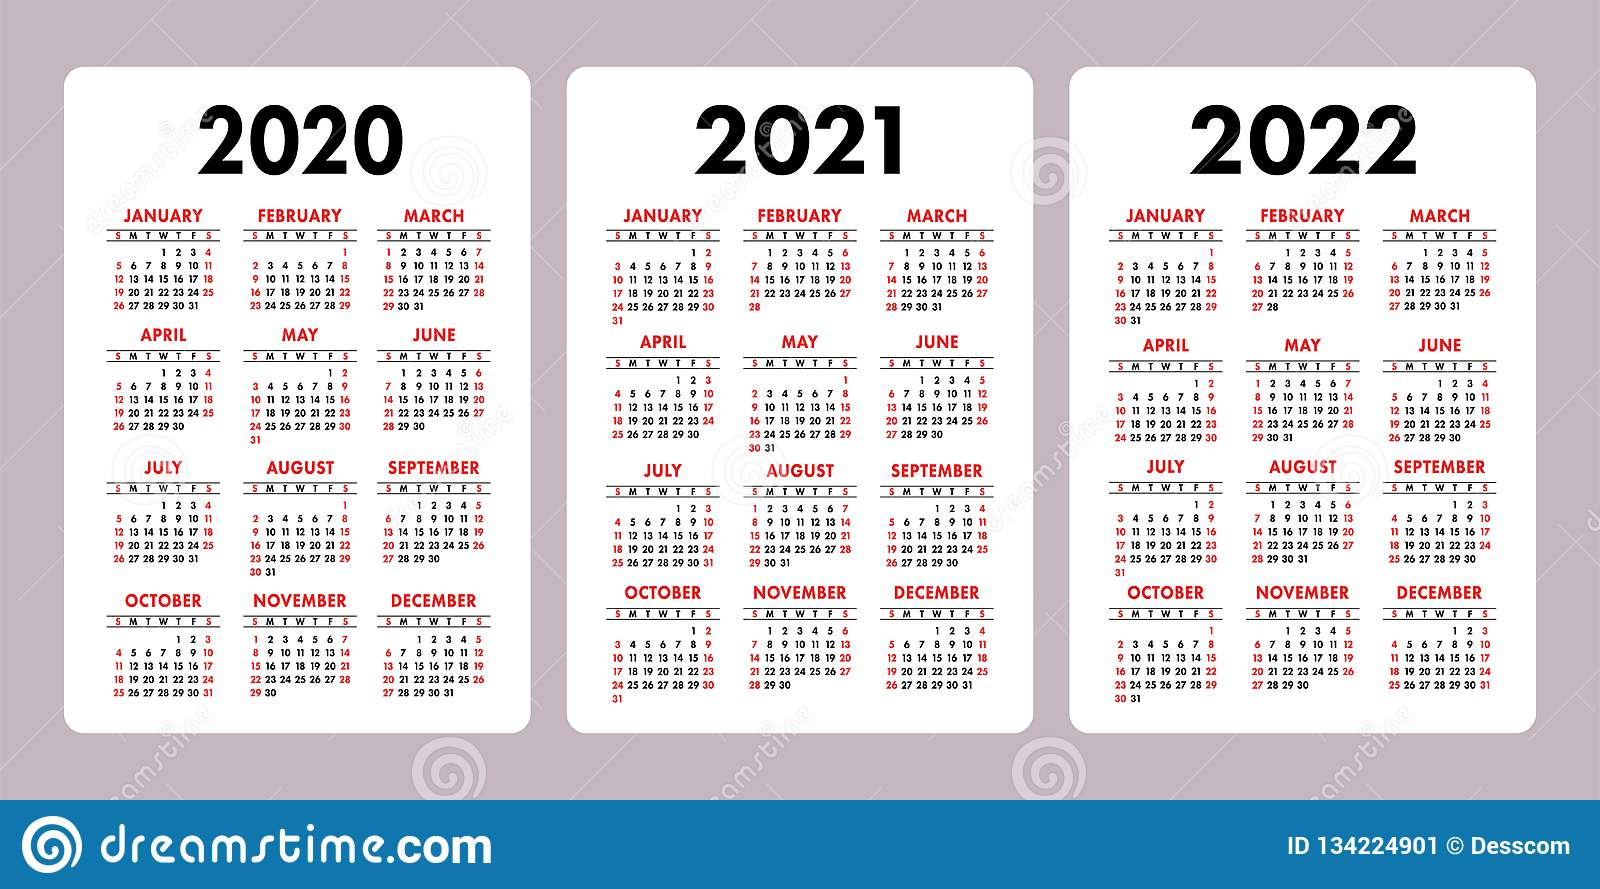 Collect Free Printable Calendar 20202022 Calendar